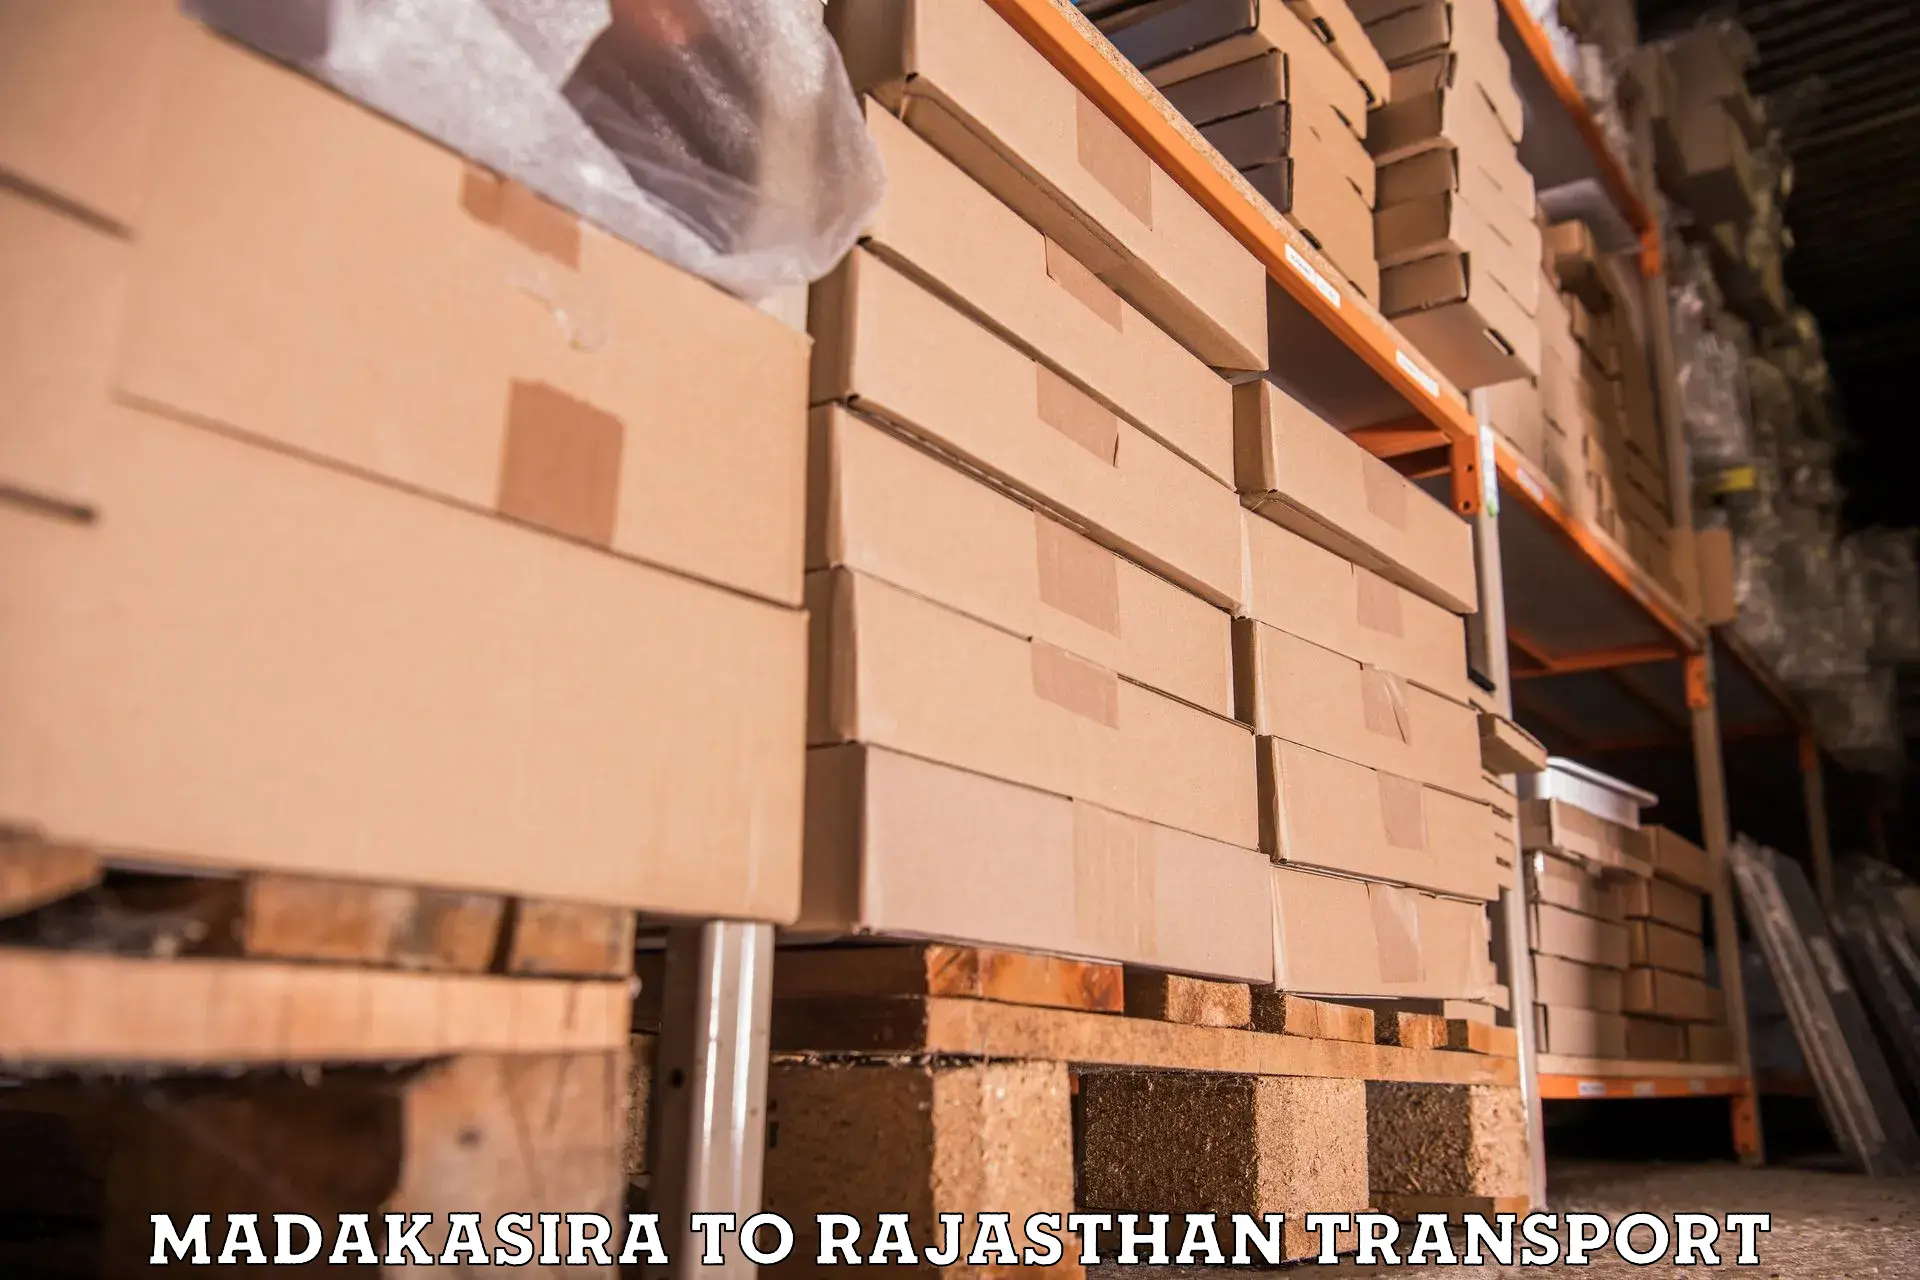 Furniture transport service Madakasira to Banswara